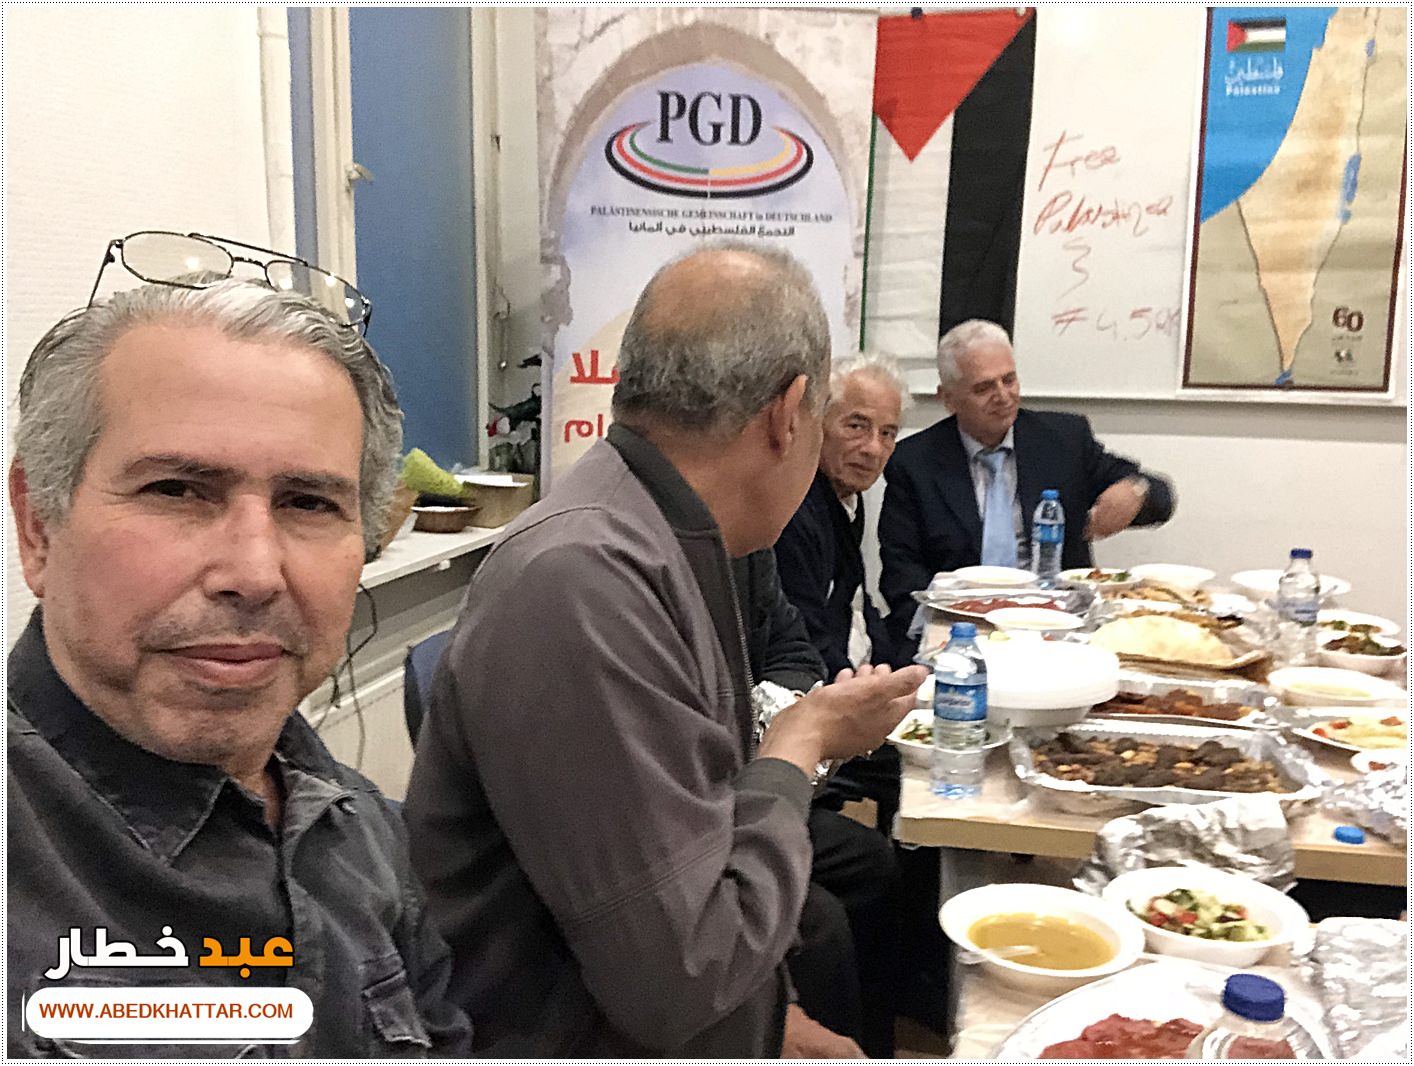 على هامش الإفطار الجماعي الّذي أقامه التجمع الفلسطيني في ألمانيا في مقرّه في برلين